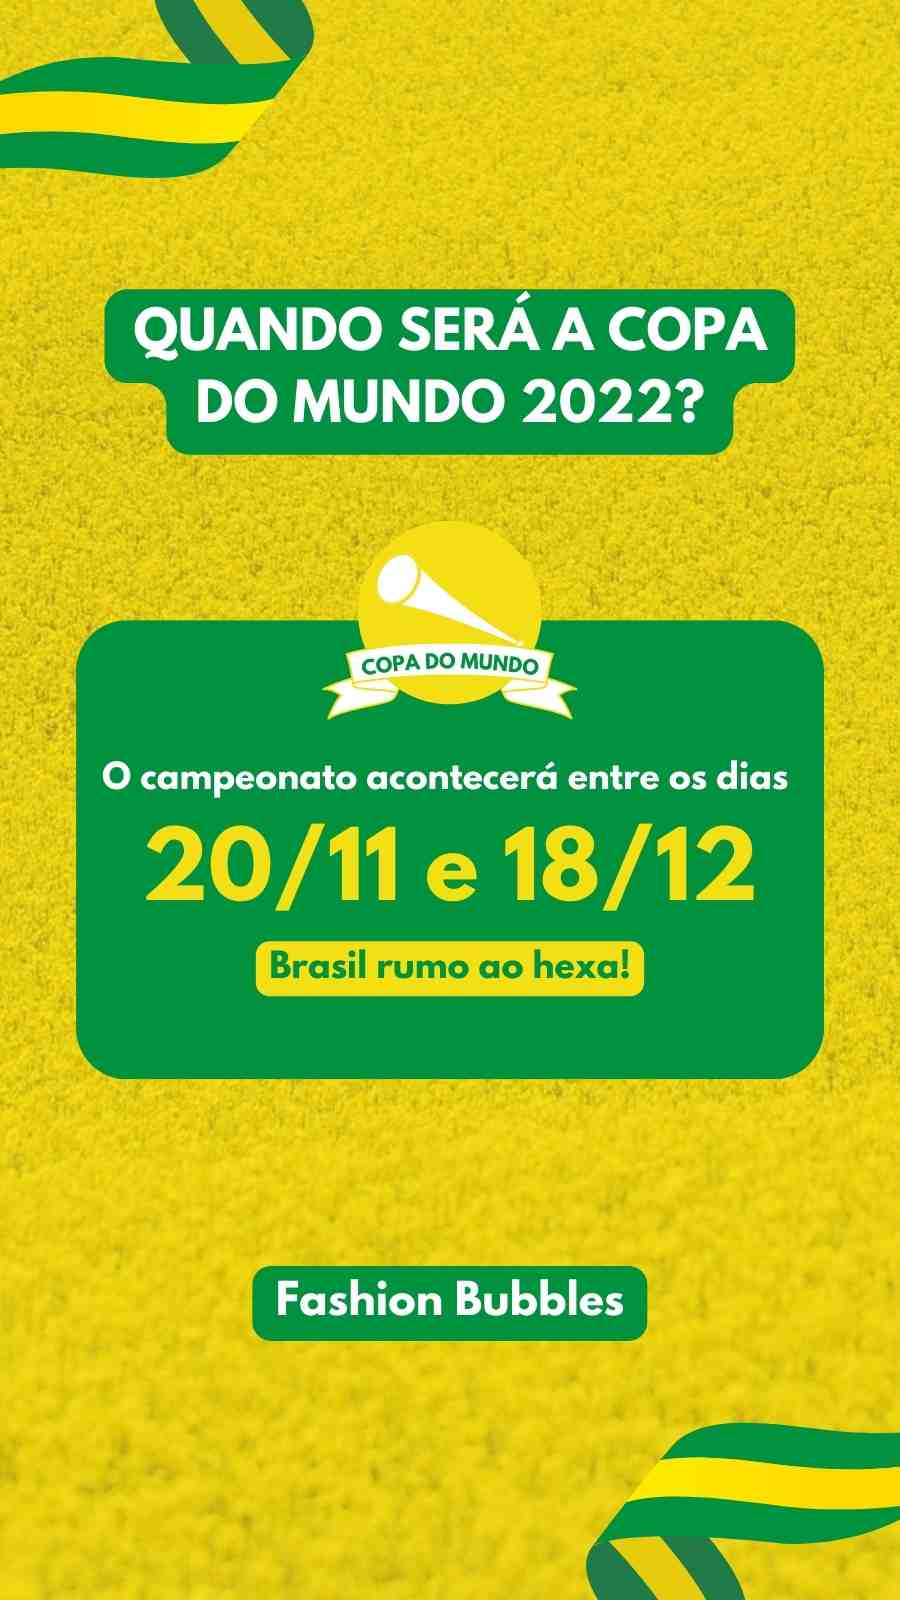 Imagem em fundo amarelo. Escrito de branco e amarelo com fundo verde: "Quando será a Copa do Mundo 2022? O campeonato acomtecerá entre os dias 20/11 e 18/12. Brasil rumo ao hexa! Fashion Bubbles".